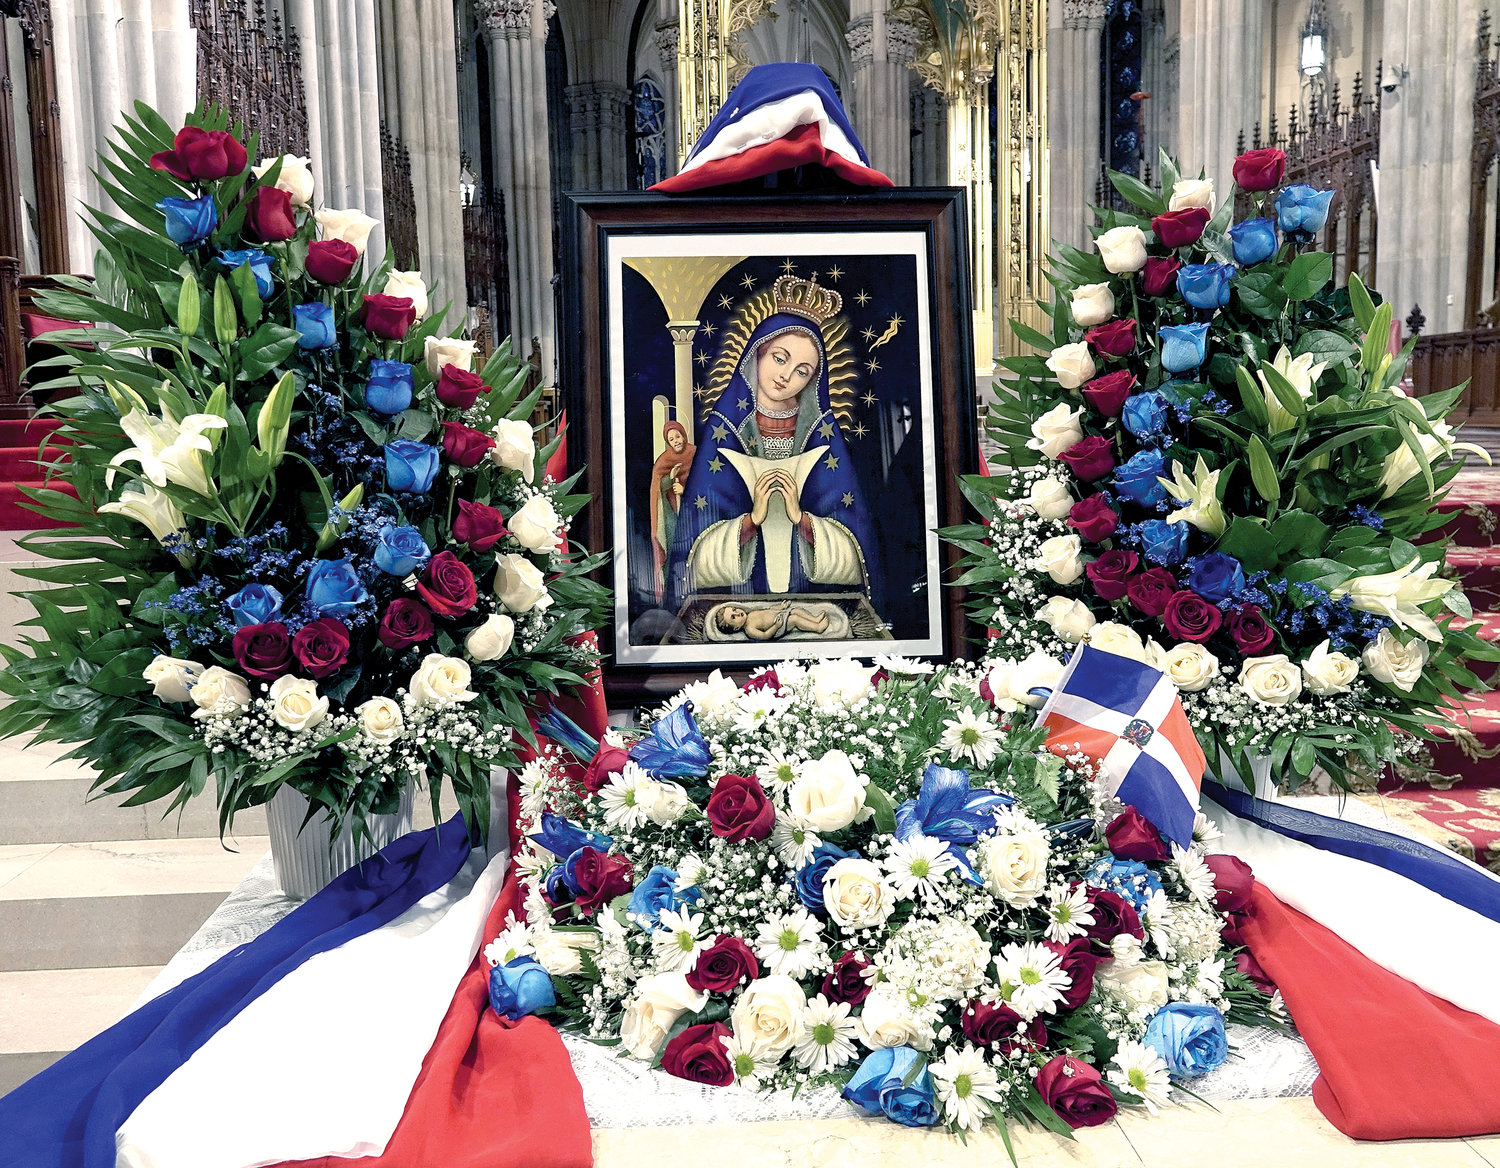 Flores y una imagen de Nuestra Señora de la Altagracia adornan los escalones del altar en la Catedral de San Patricio el 17 de enero durante la misa anual honrando María bajo su título de patrona de la República Dominicana.